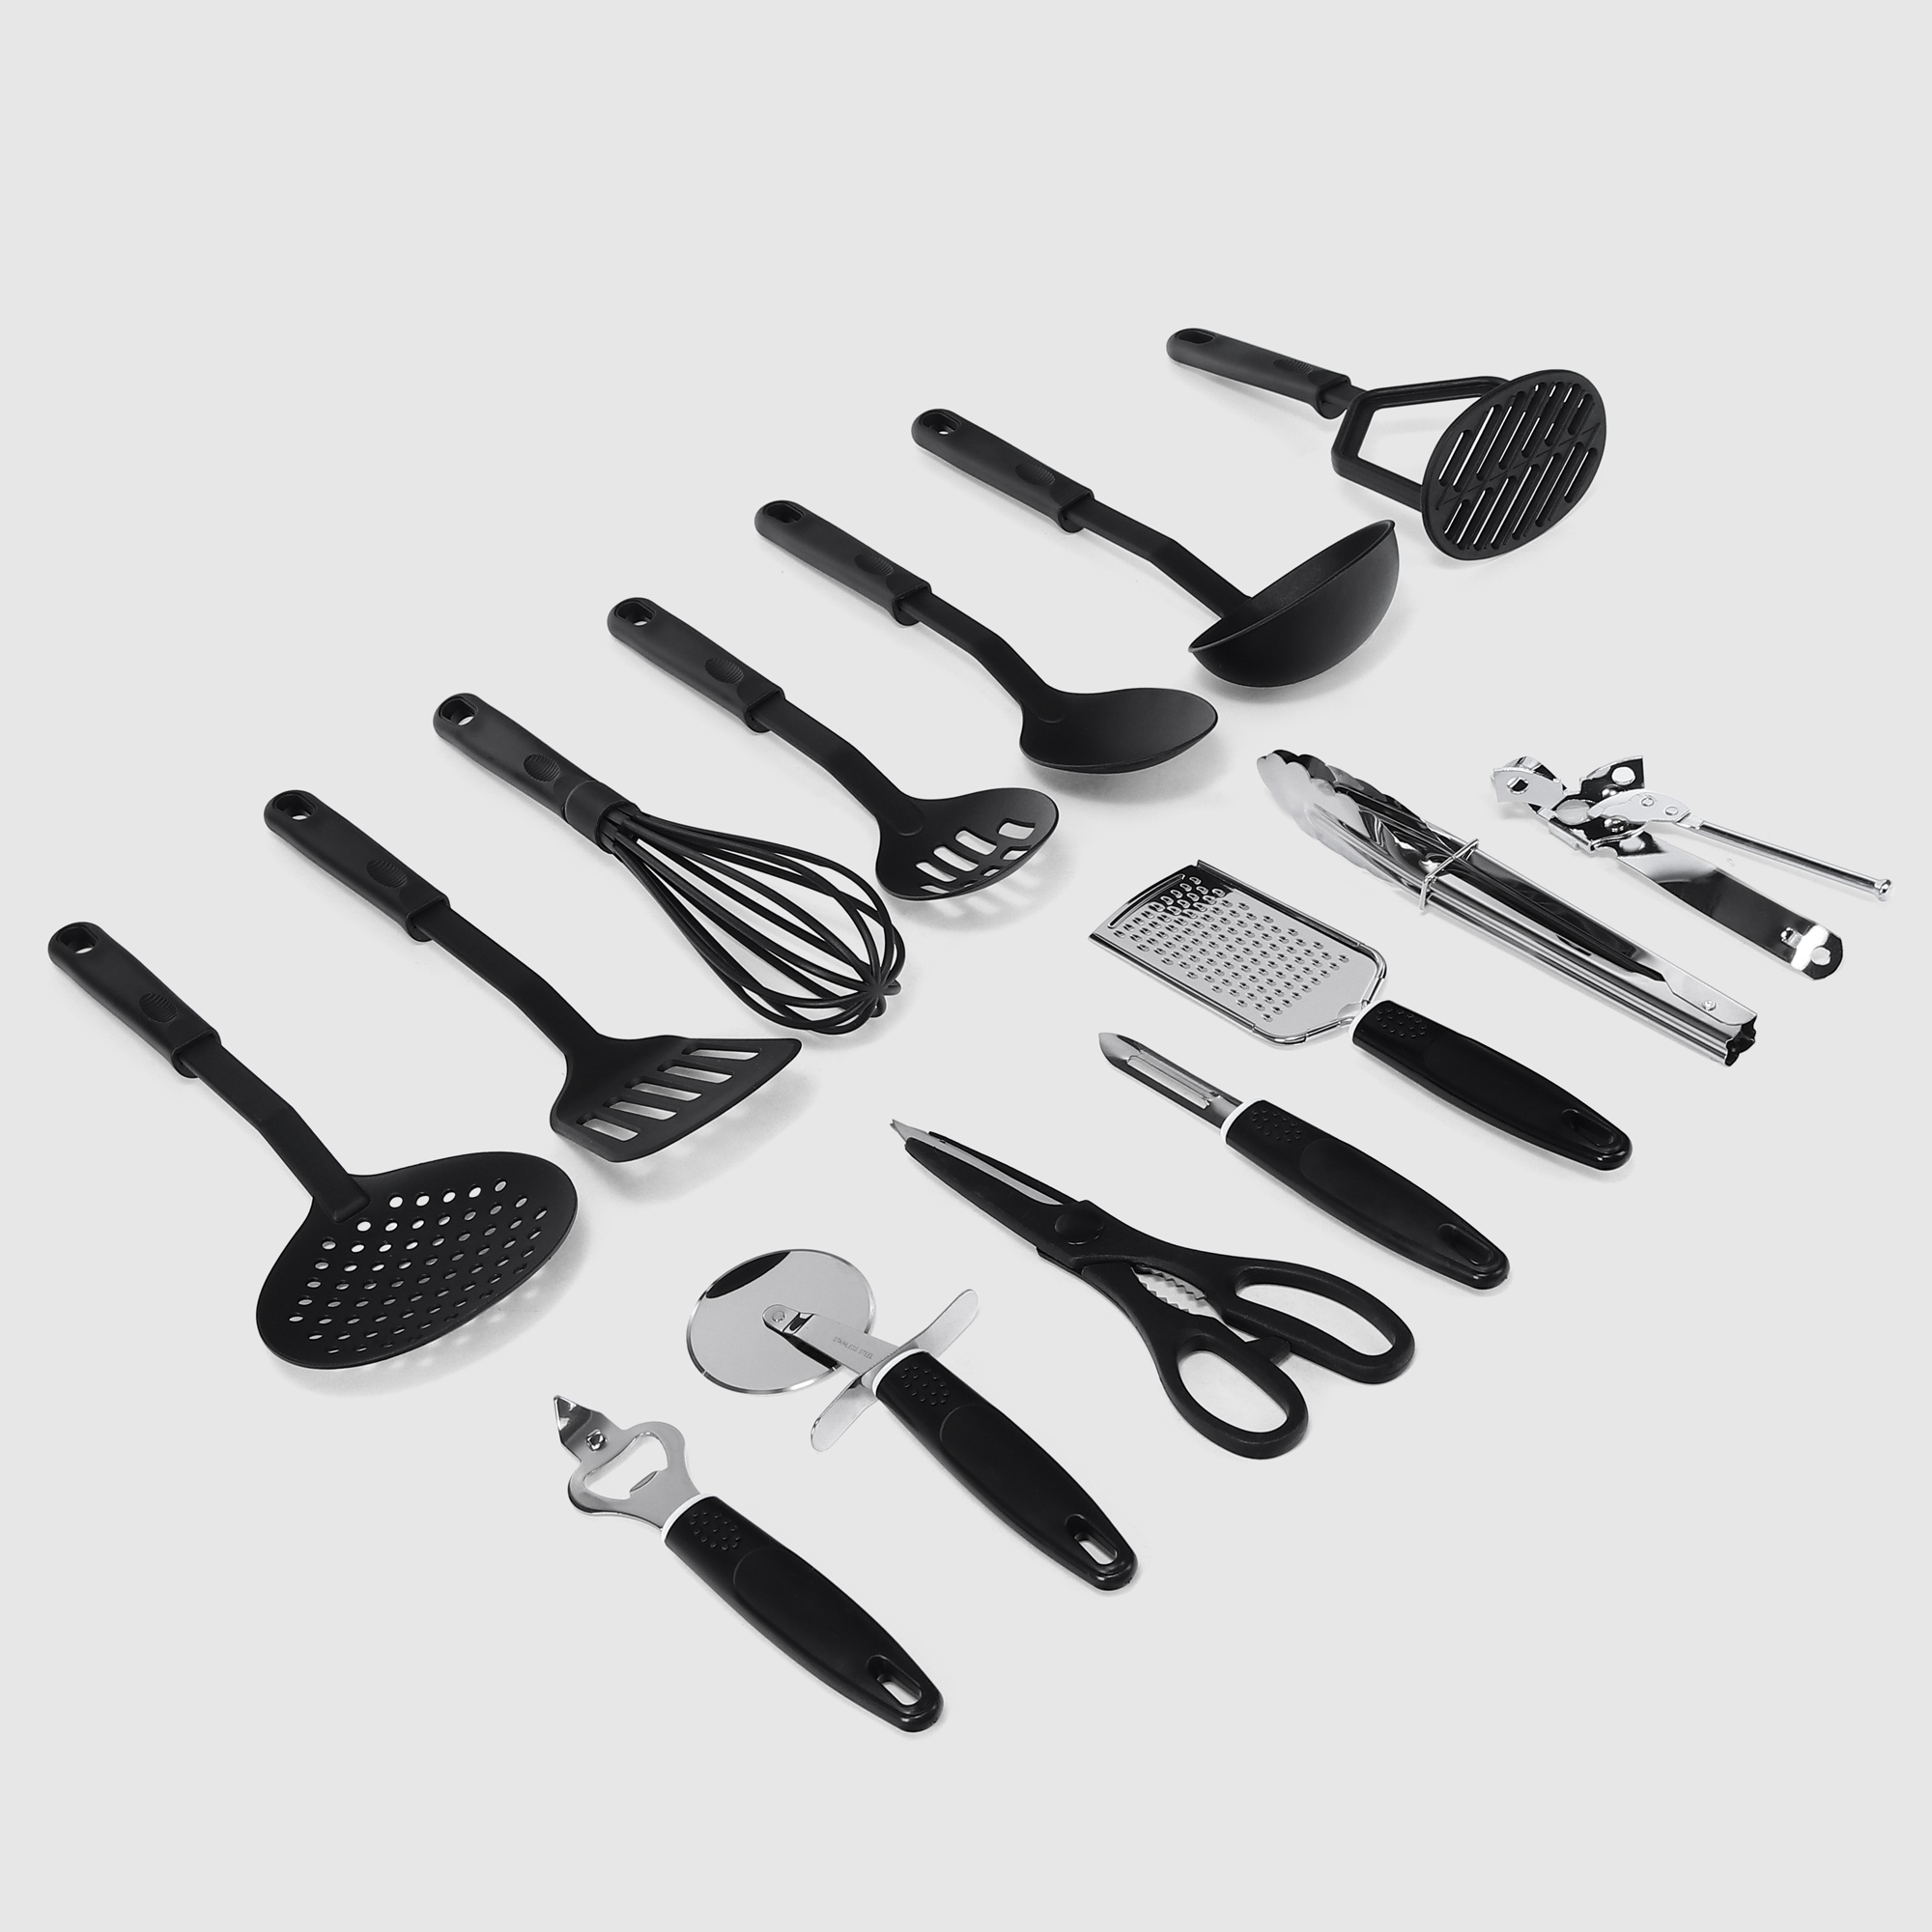 Набор кухонных принадлежностей Vantage 14 предметов черный набор кухонных принадлежностей vipahmet vp 309 с подставкой 6 предметов черный